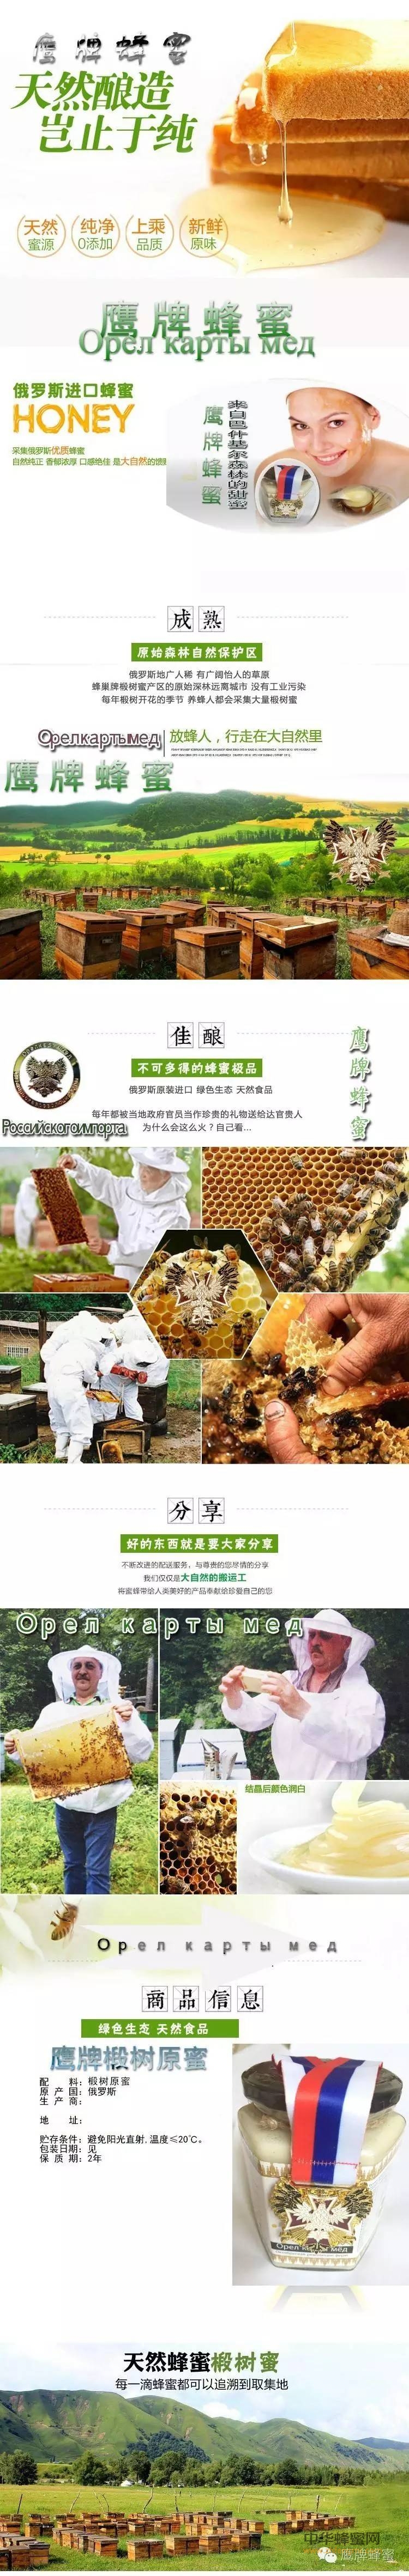 巴什基尔蜂蜜质量的定义